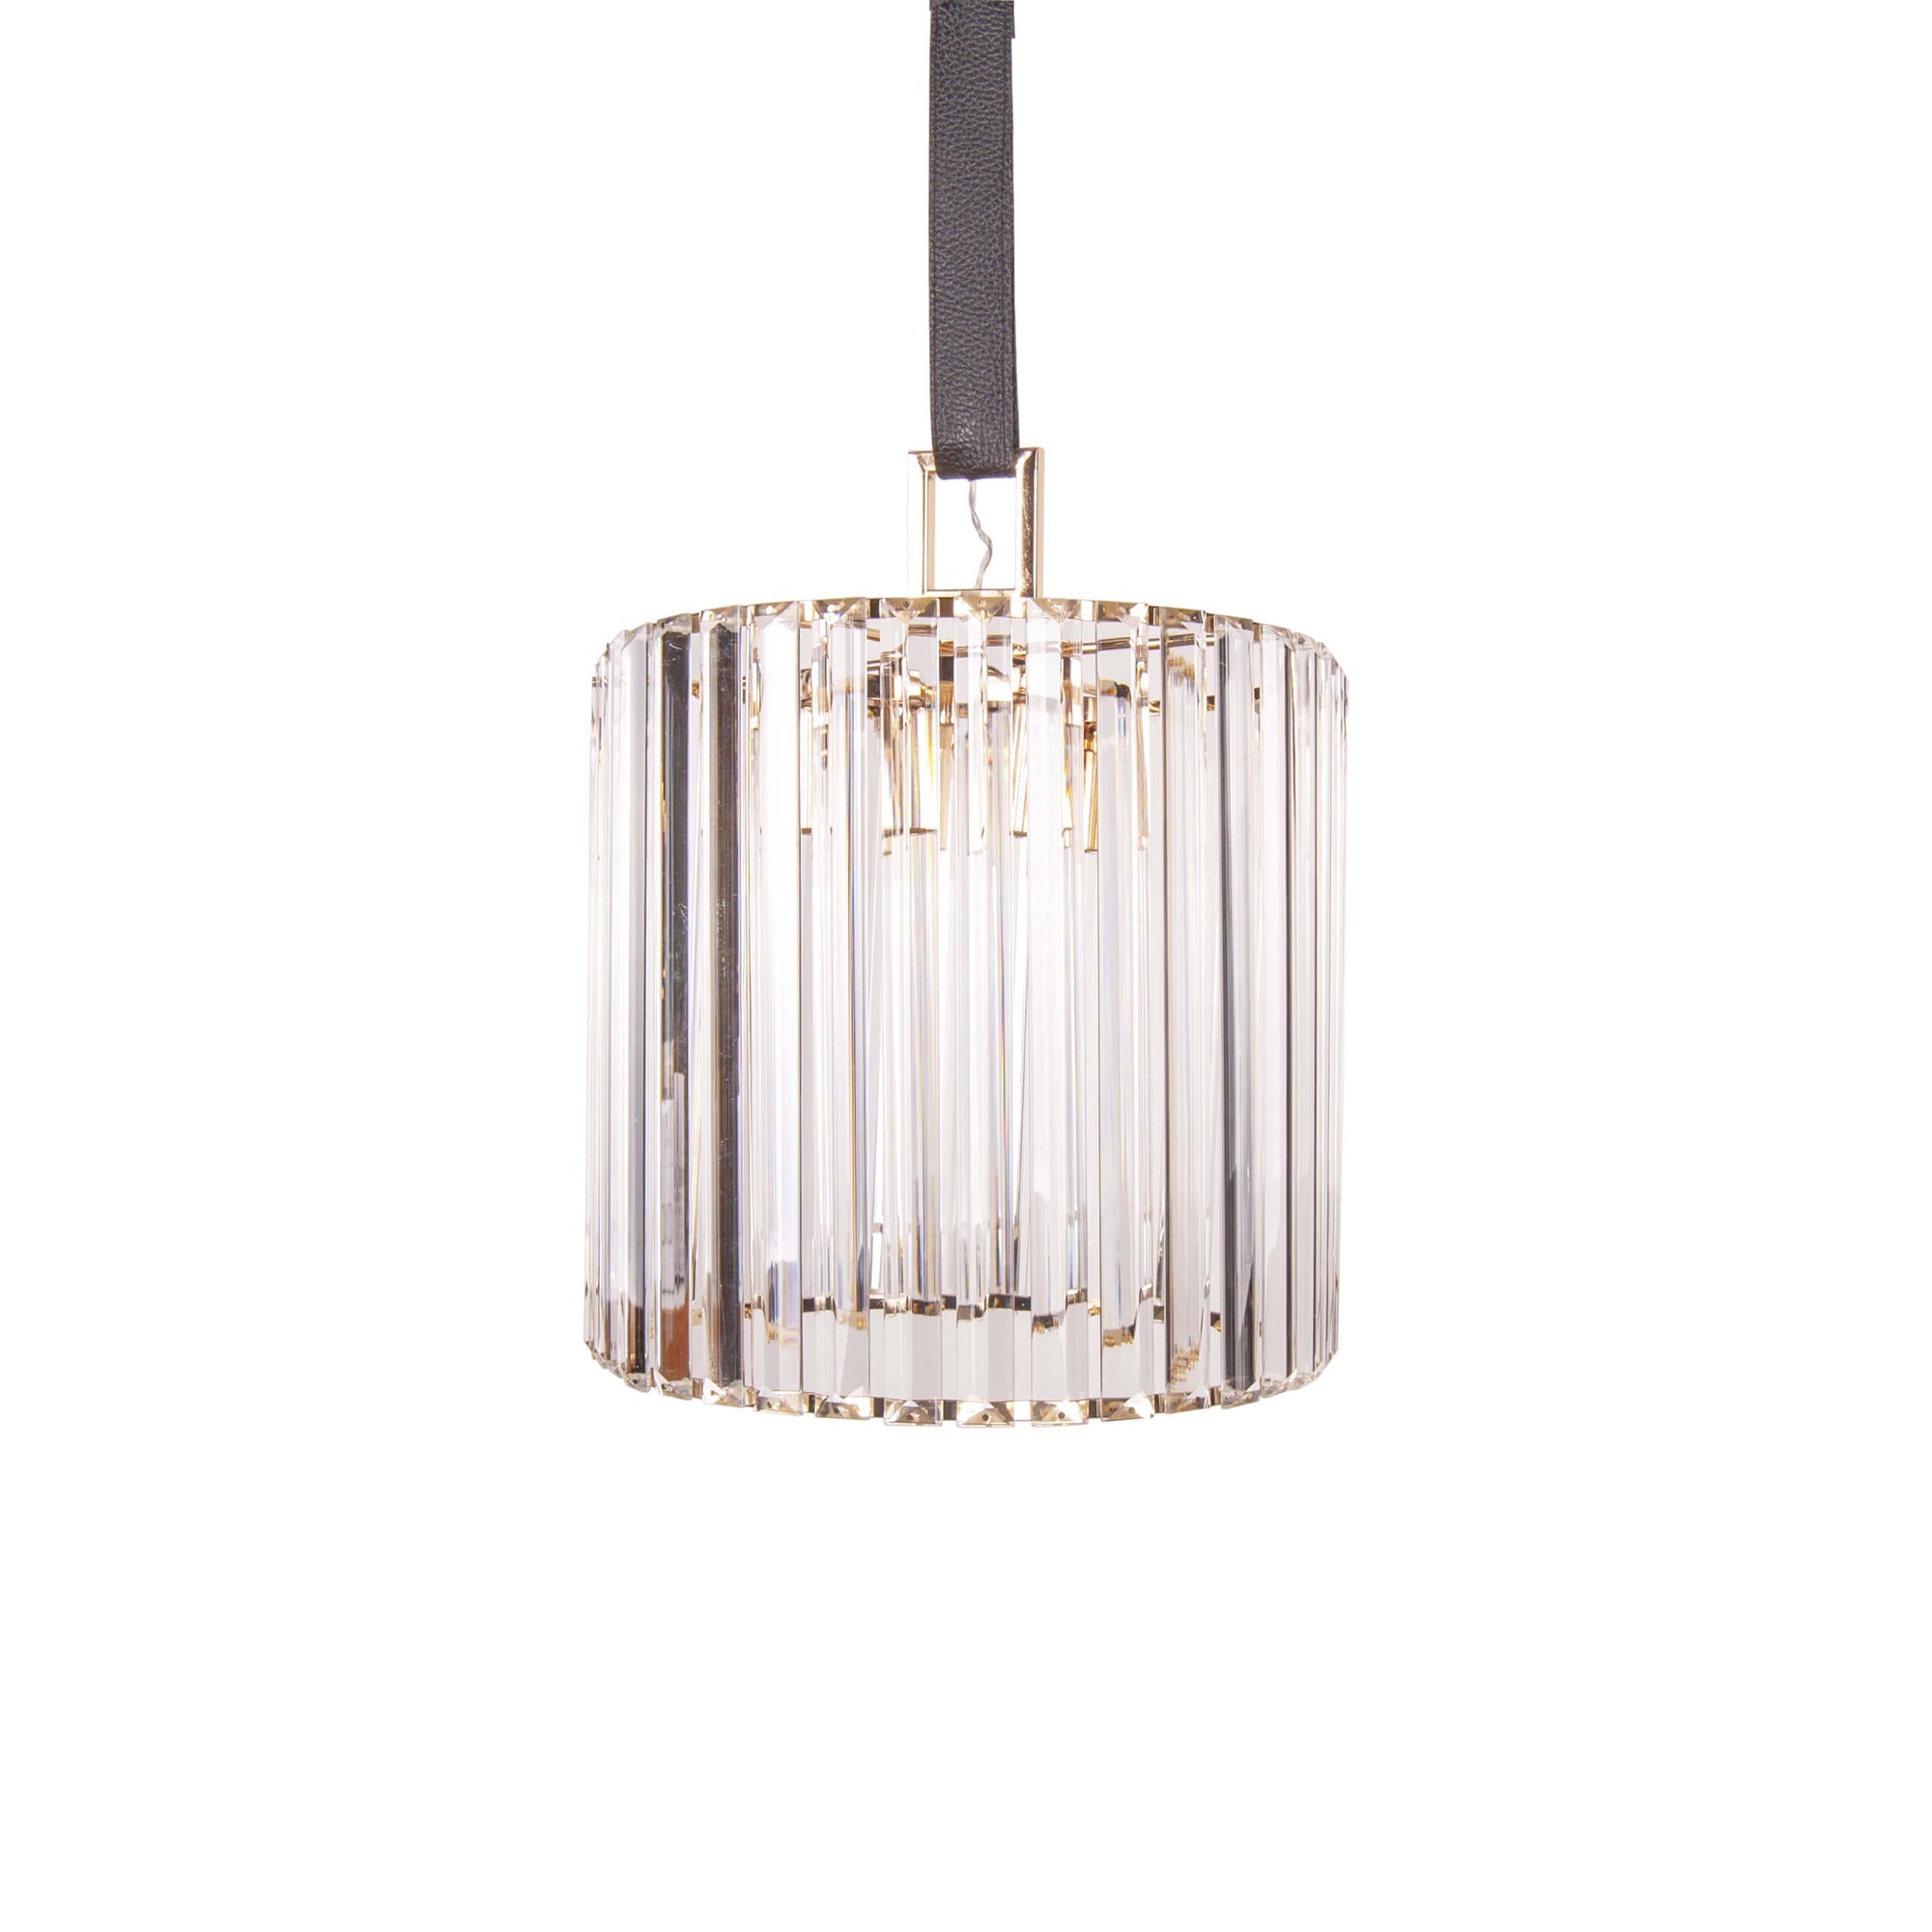 Pendul transparent Margaux S2 din sticla - Corp de iluminat design modern din colectia de lampi suspendate si lustre DOMICILIO